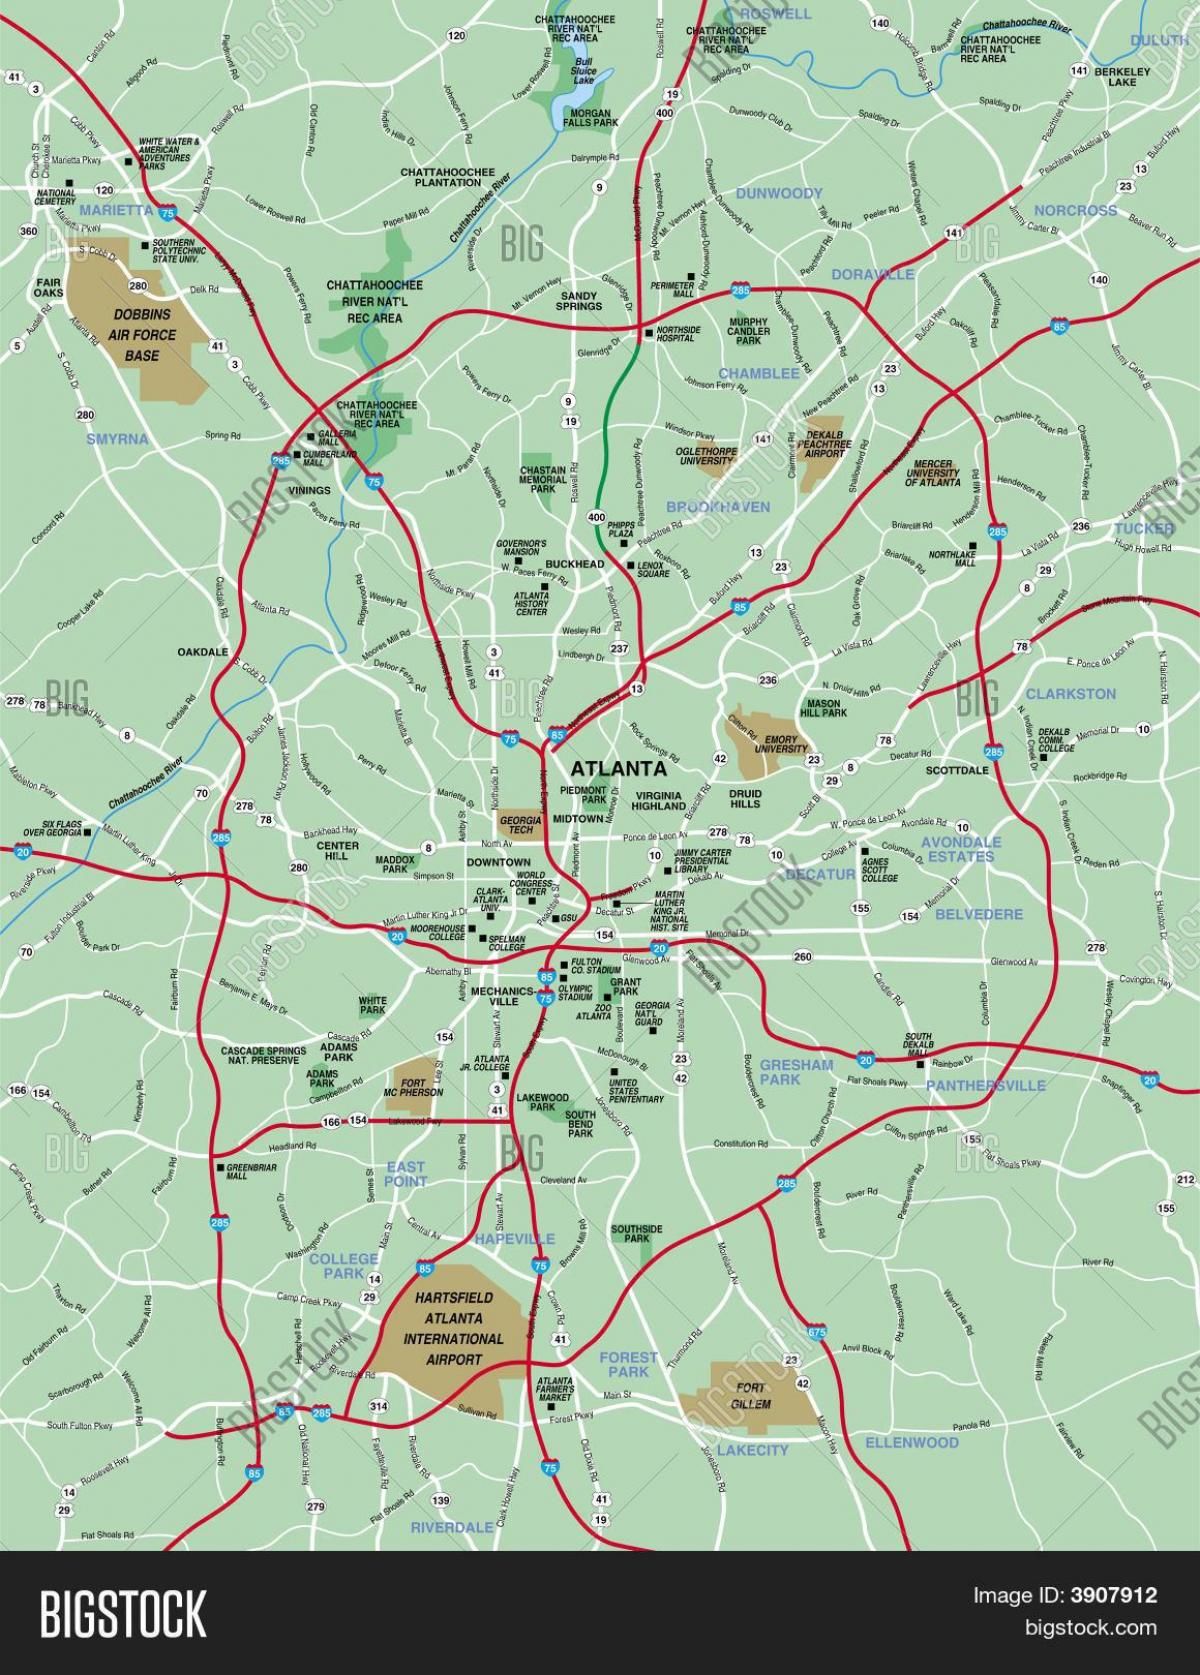 greater Atlanta mappa dell'area